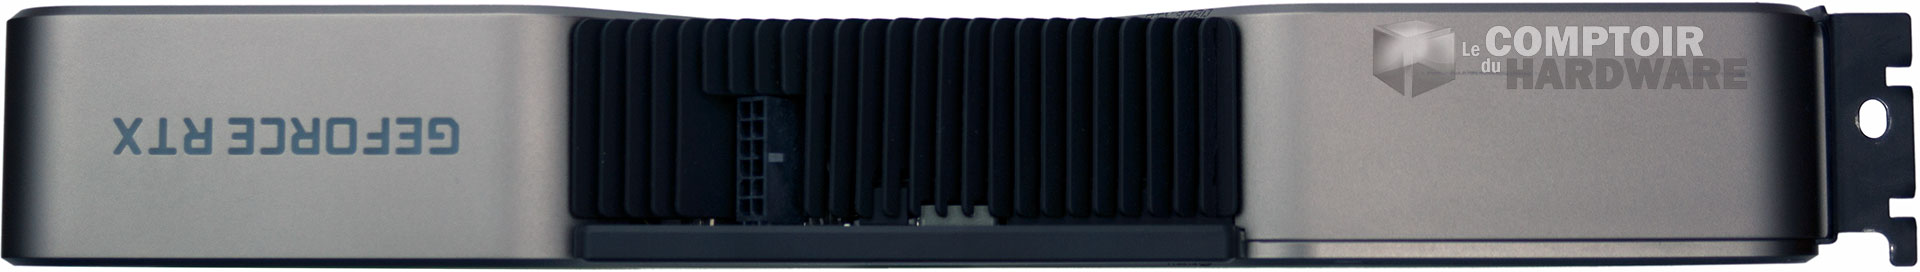 GeForce RTX 3080 Founder's Edition : vue de coté